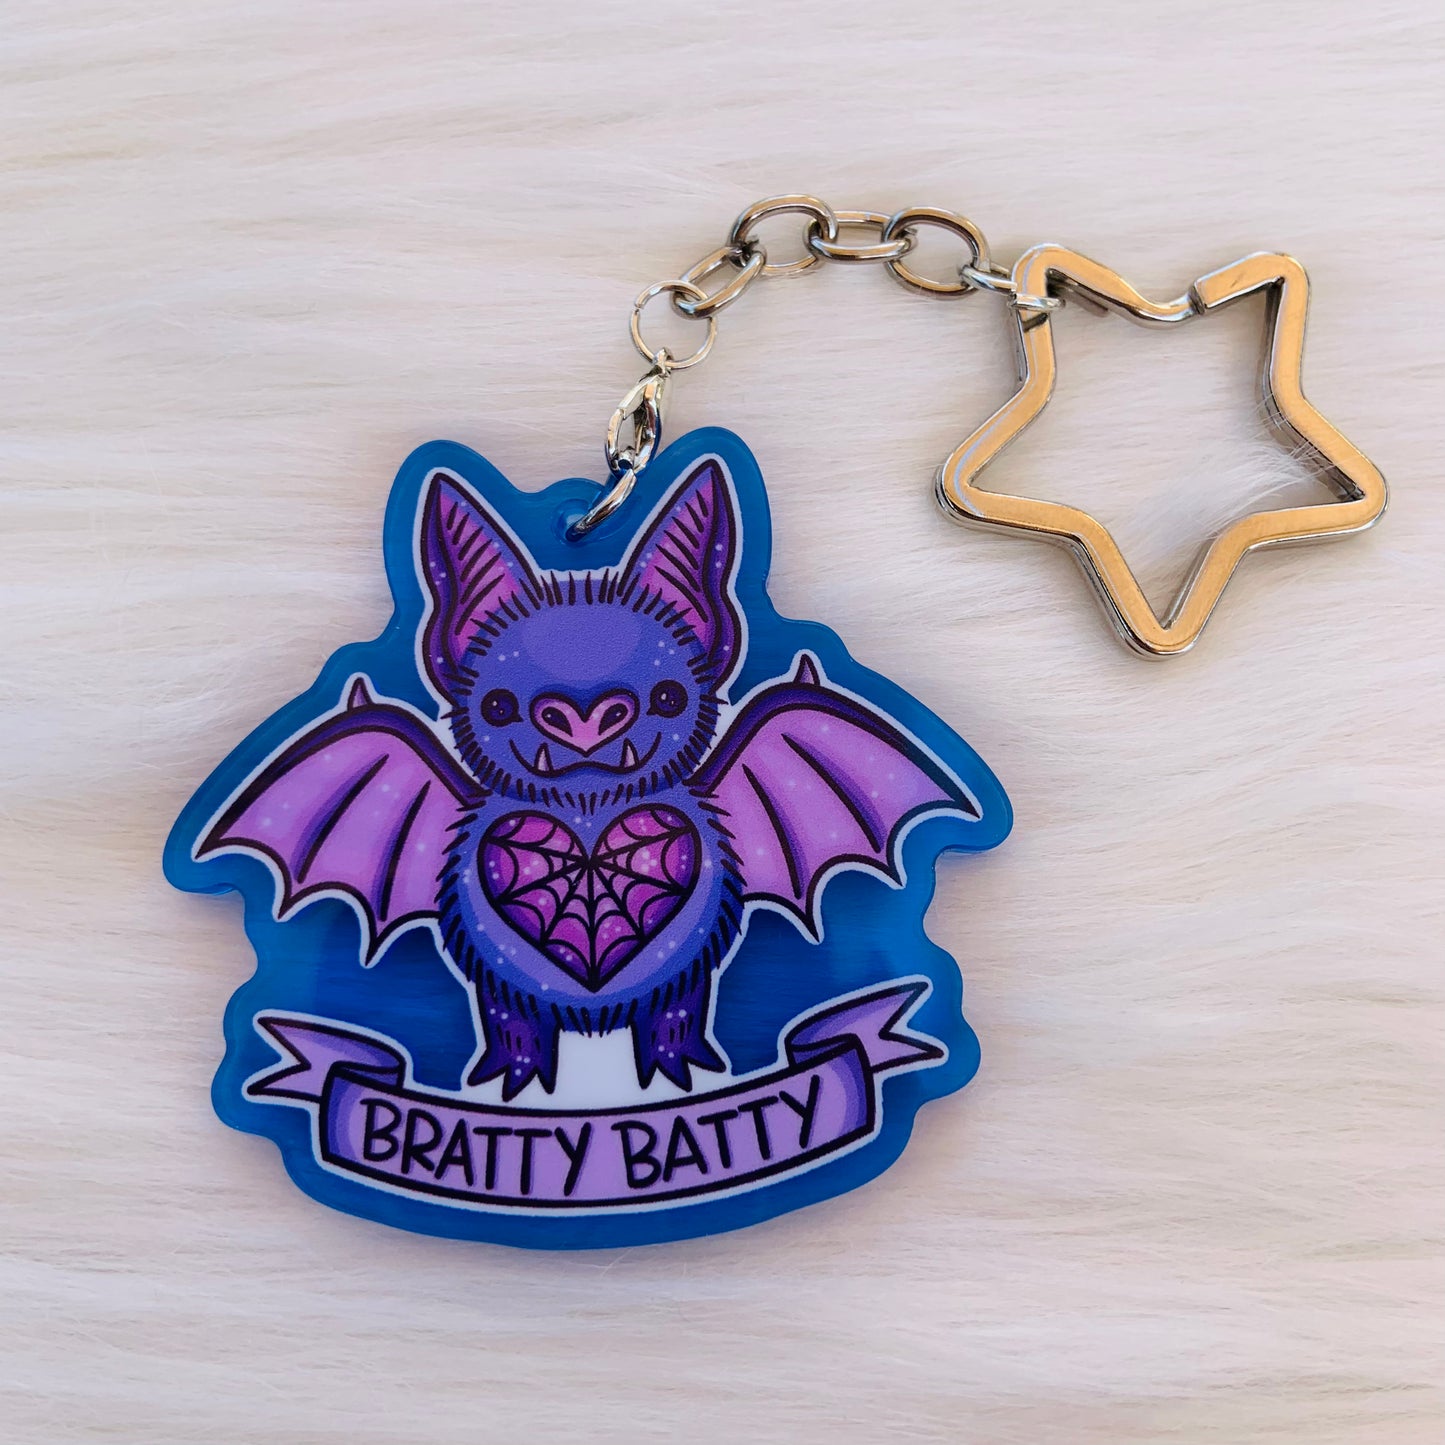 Bratty Batty Keychain